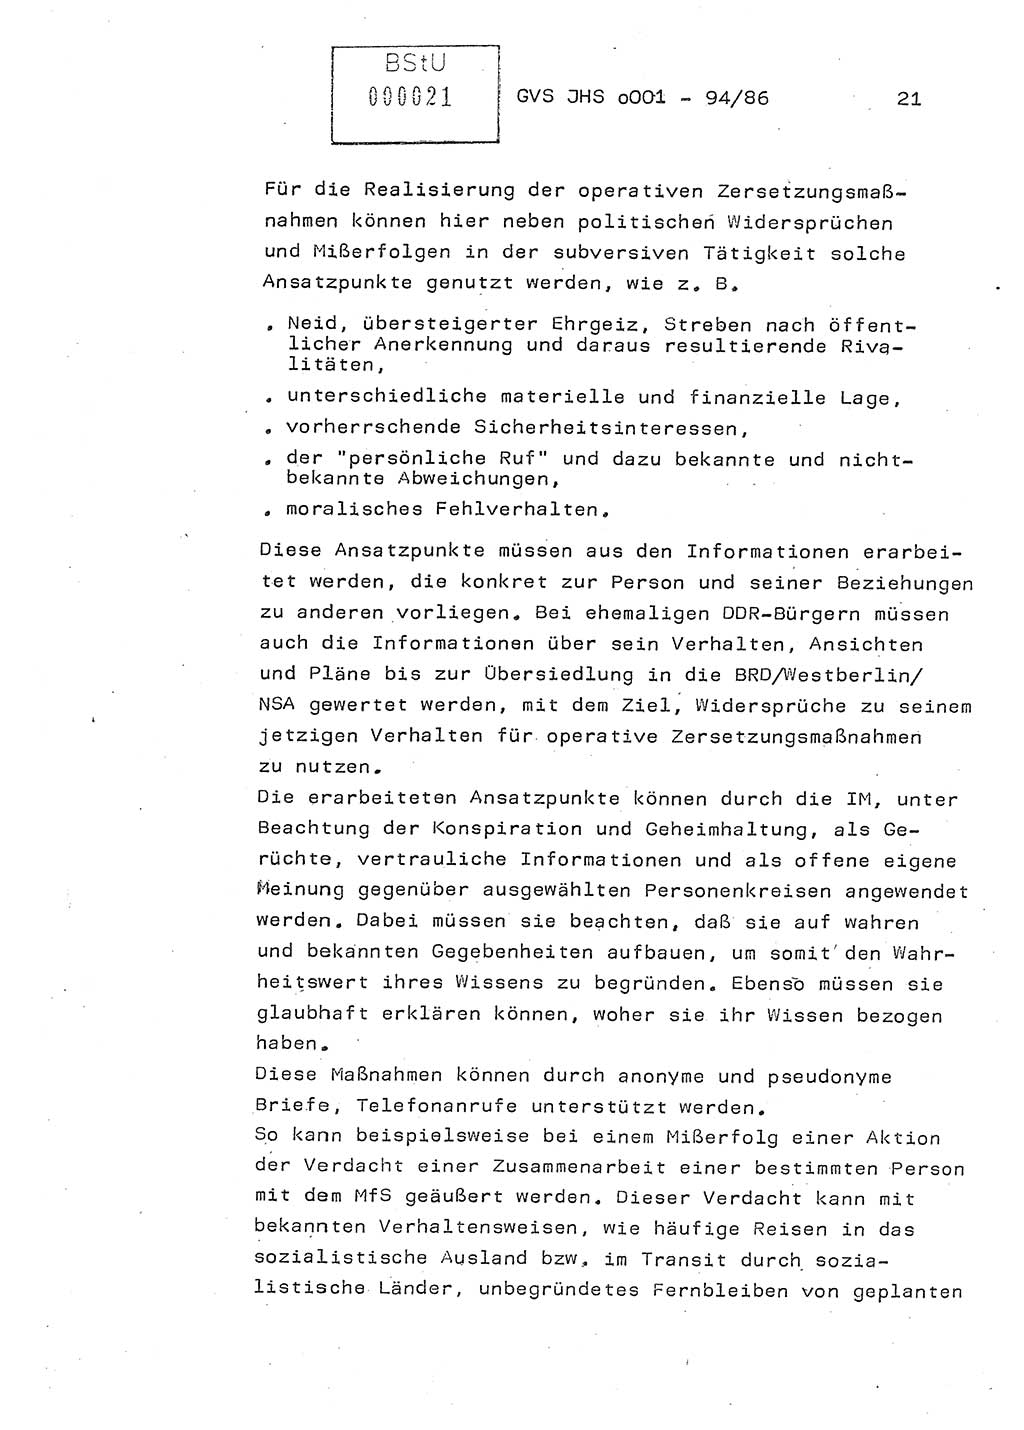 Diplomarbeit Oberleutnant Volkmar Pechmann (HA ⅩⅩ/5), Ministerium für Staatssicherheit (MfS) [Deutsche Demokratische Republik (DDR)], Juristische Hochschule (JHS), Geheime Verschlußsache (GVS) o001-94/86, Potsdam 1986, Blatt 21 (Dipl.-Arb. MfS DDR JHS GVS o001-94/86 1986, Bl. 21)